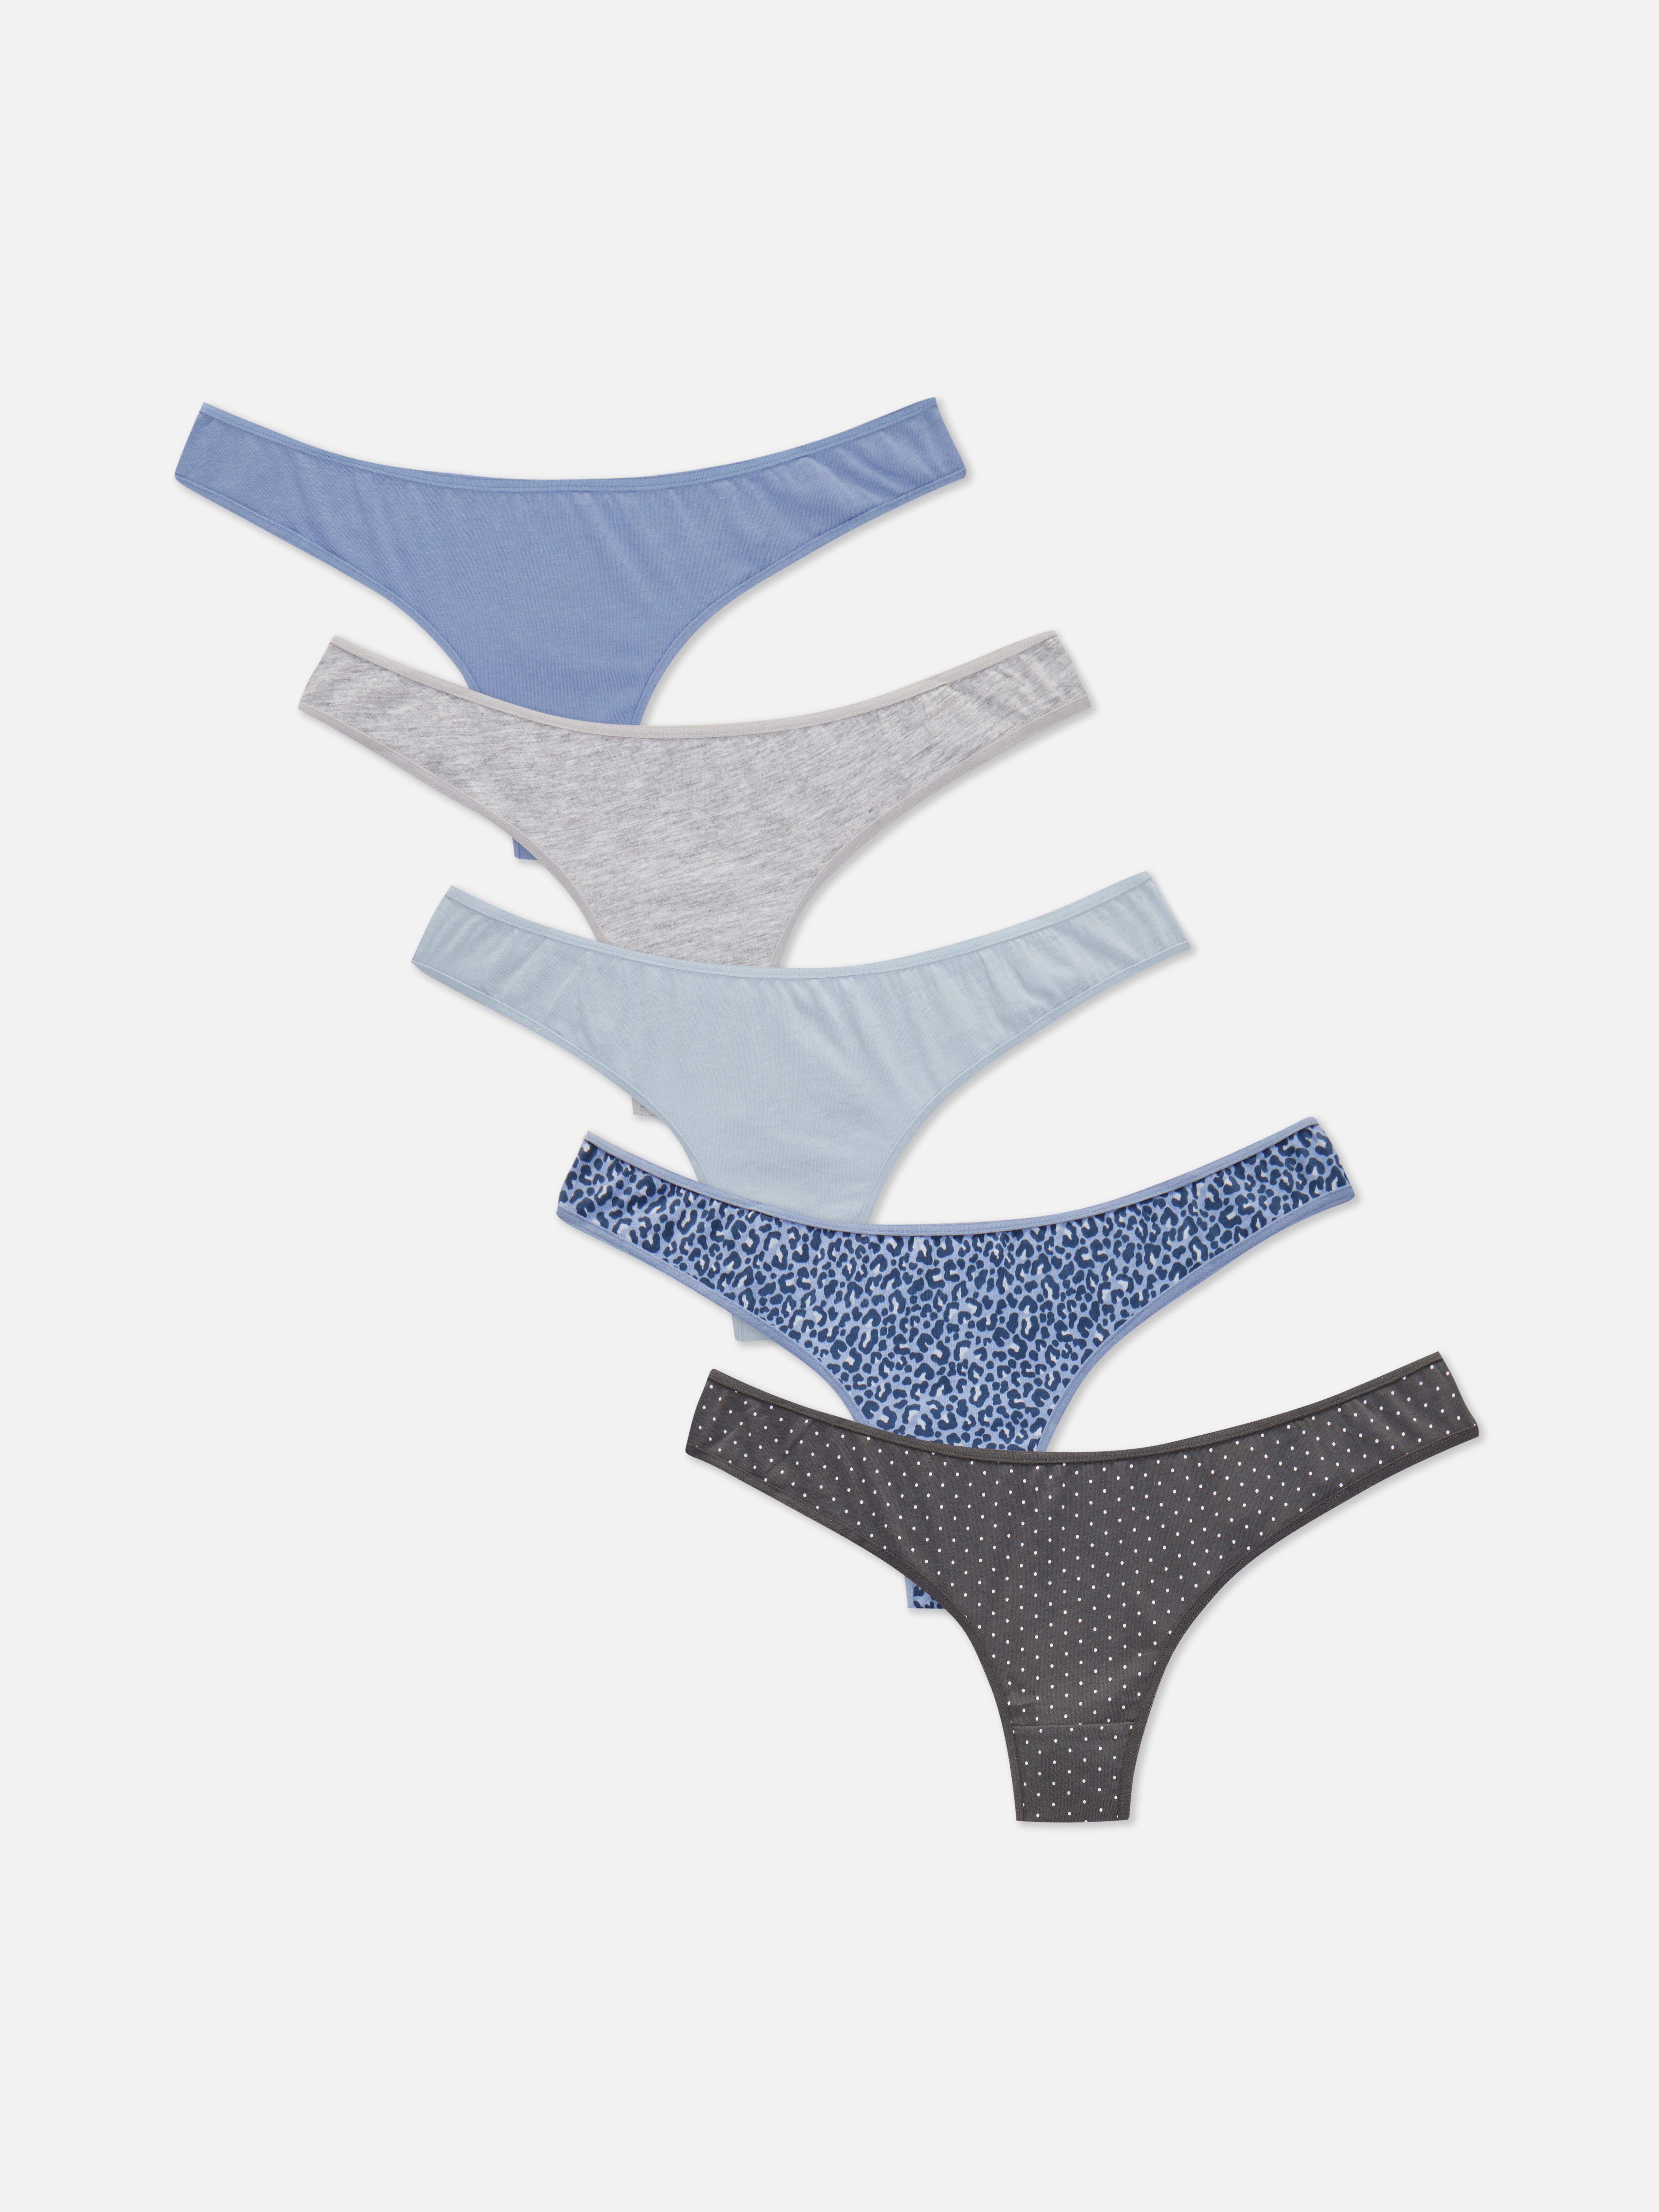 Primark Thongs Panties 😍😍😍 Sizes: 8-10(UK) Colors: As Seen